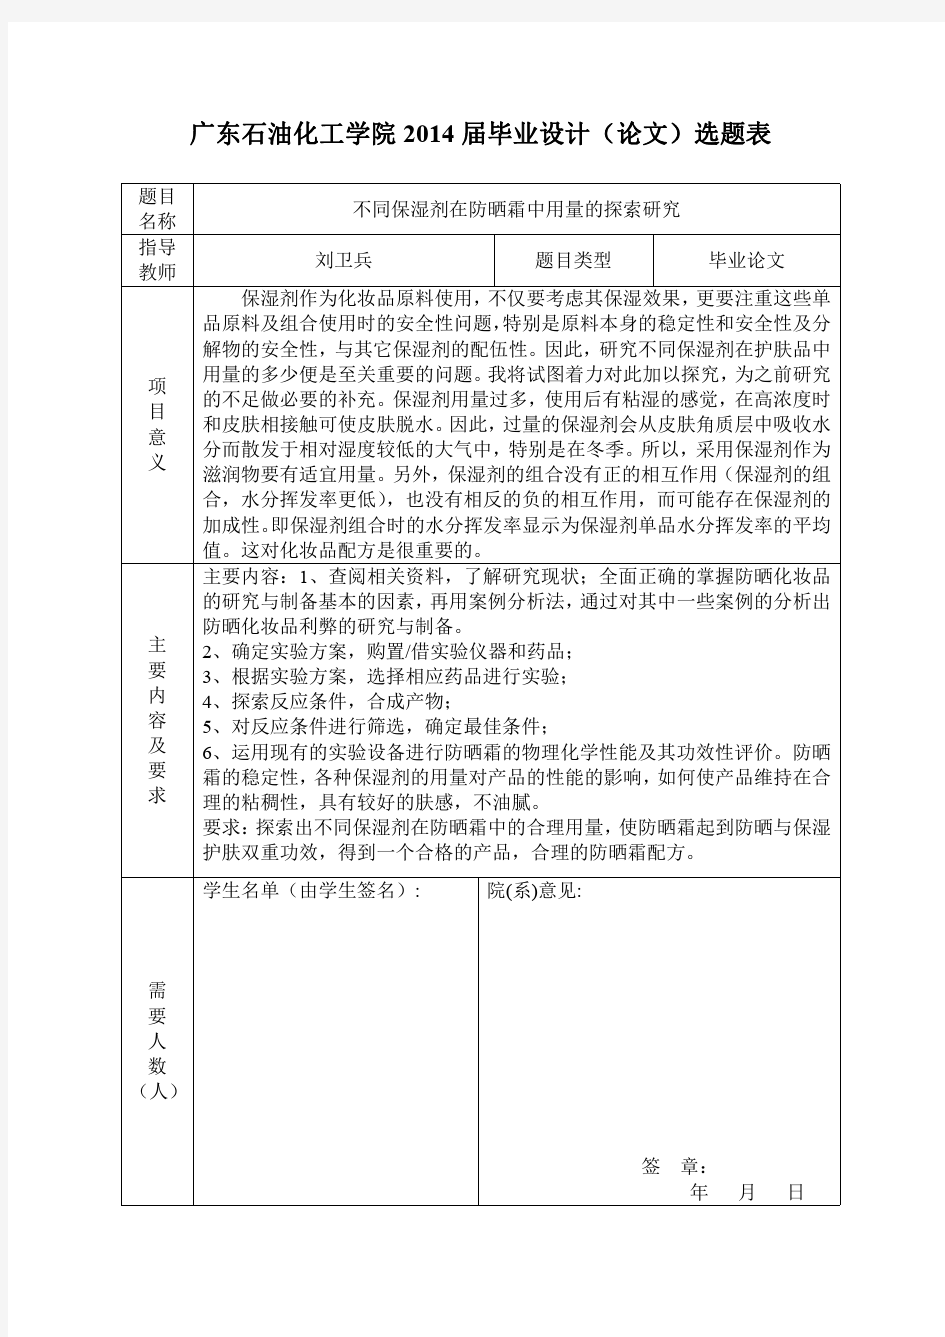 广东石油化工学院毕业设计(论文)选题表1